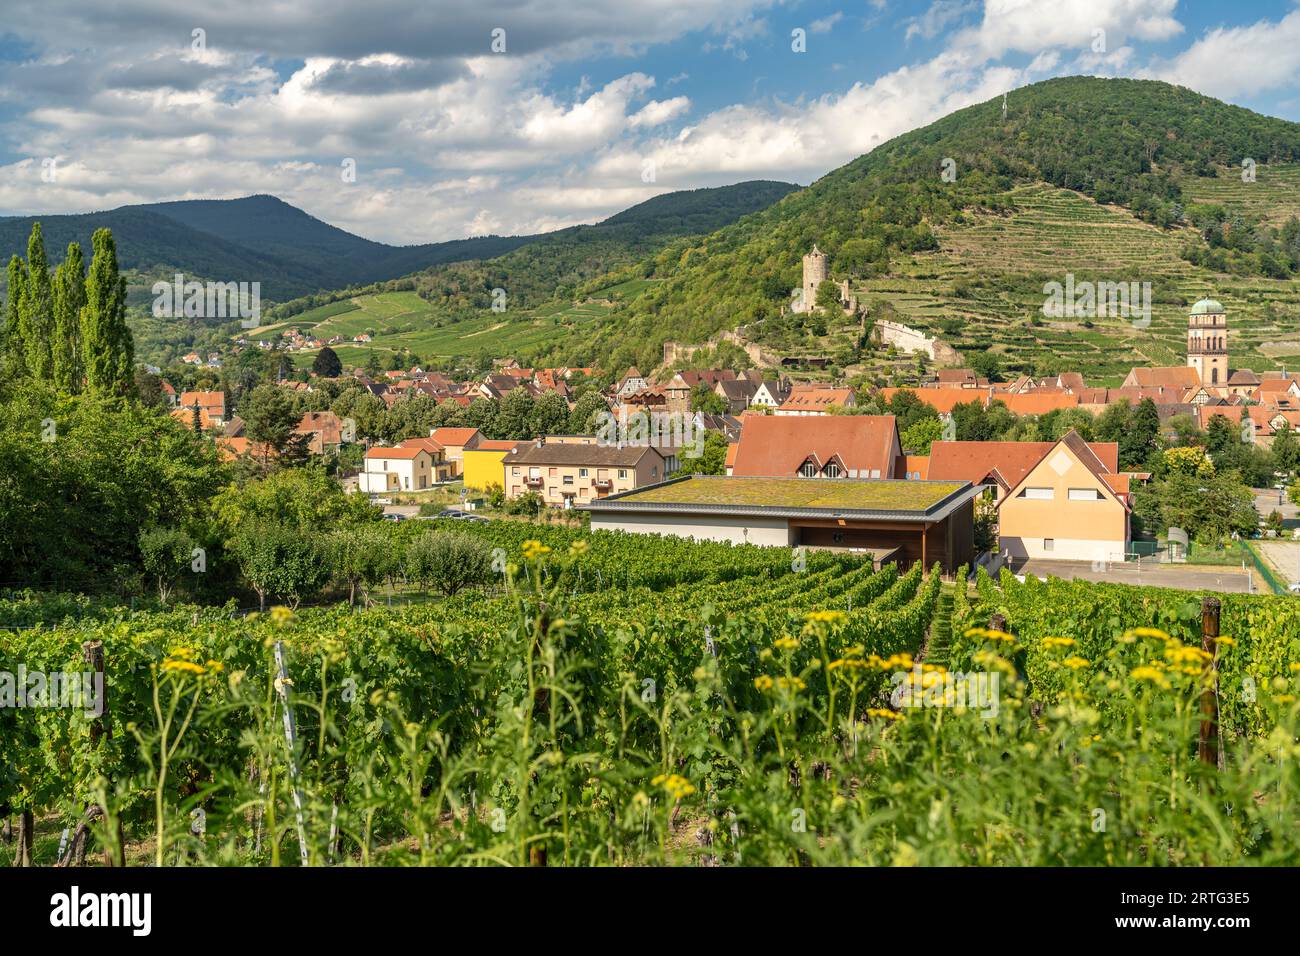 Stadtansicht und Landschaft mit Weinbergen um Kaysersberg, Elsass, Frankreich  |  Cityscape and landscape with vineyard in Kaysersberg, Alsace, France Stock Photo